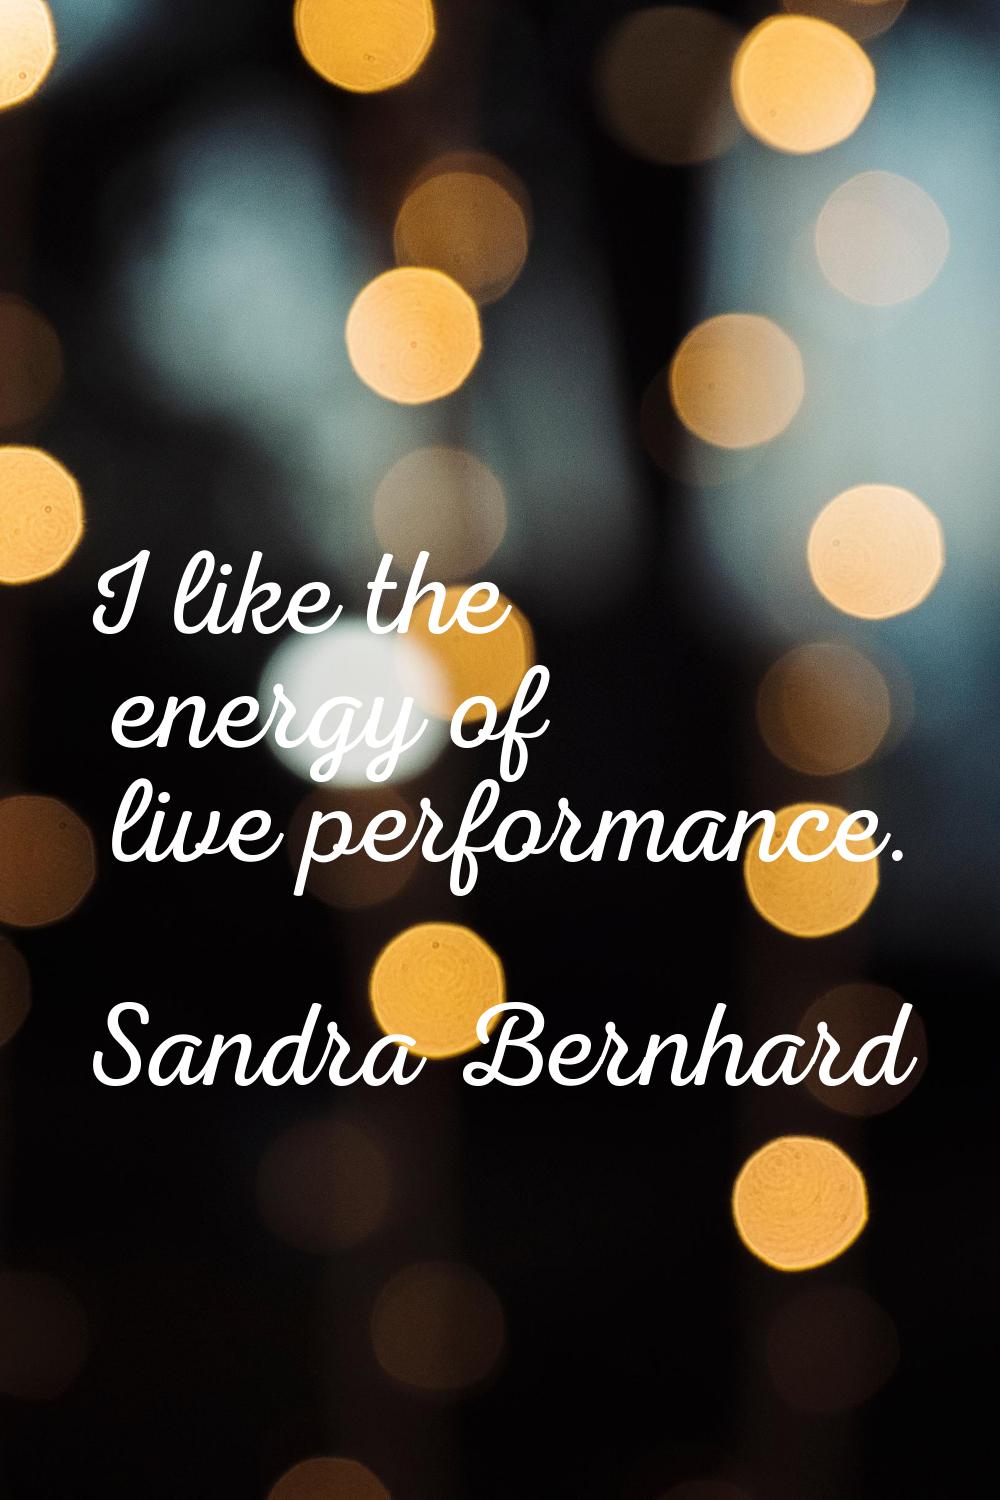 I like the energy of live performance.